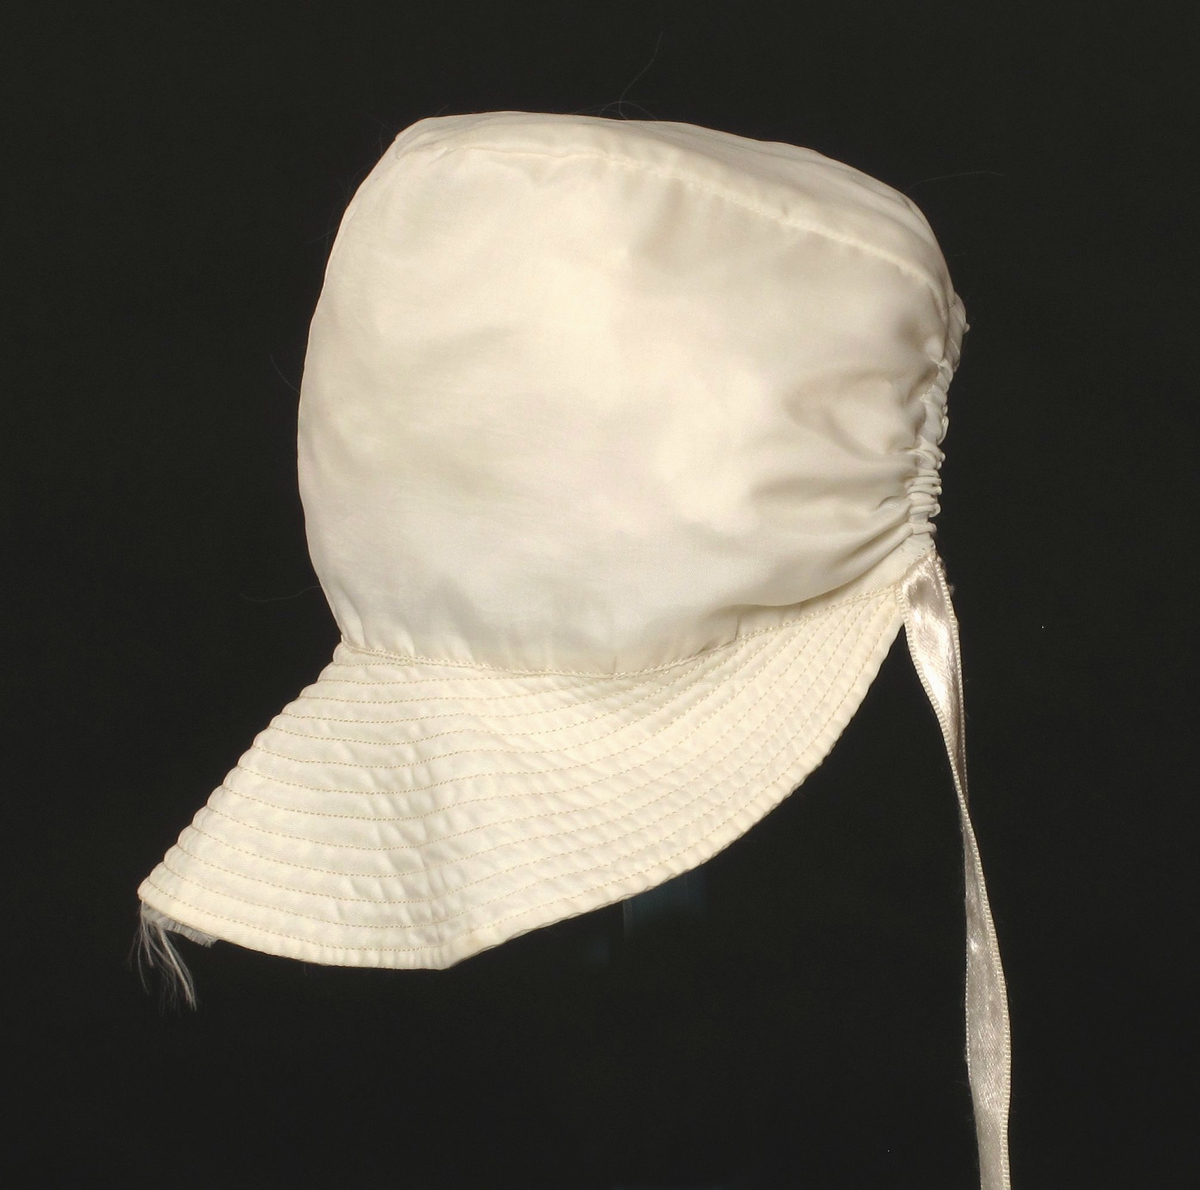 Småbarnlue sydd av hvit fallskjermsilke.